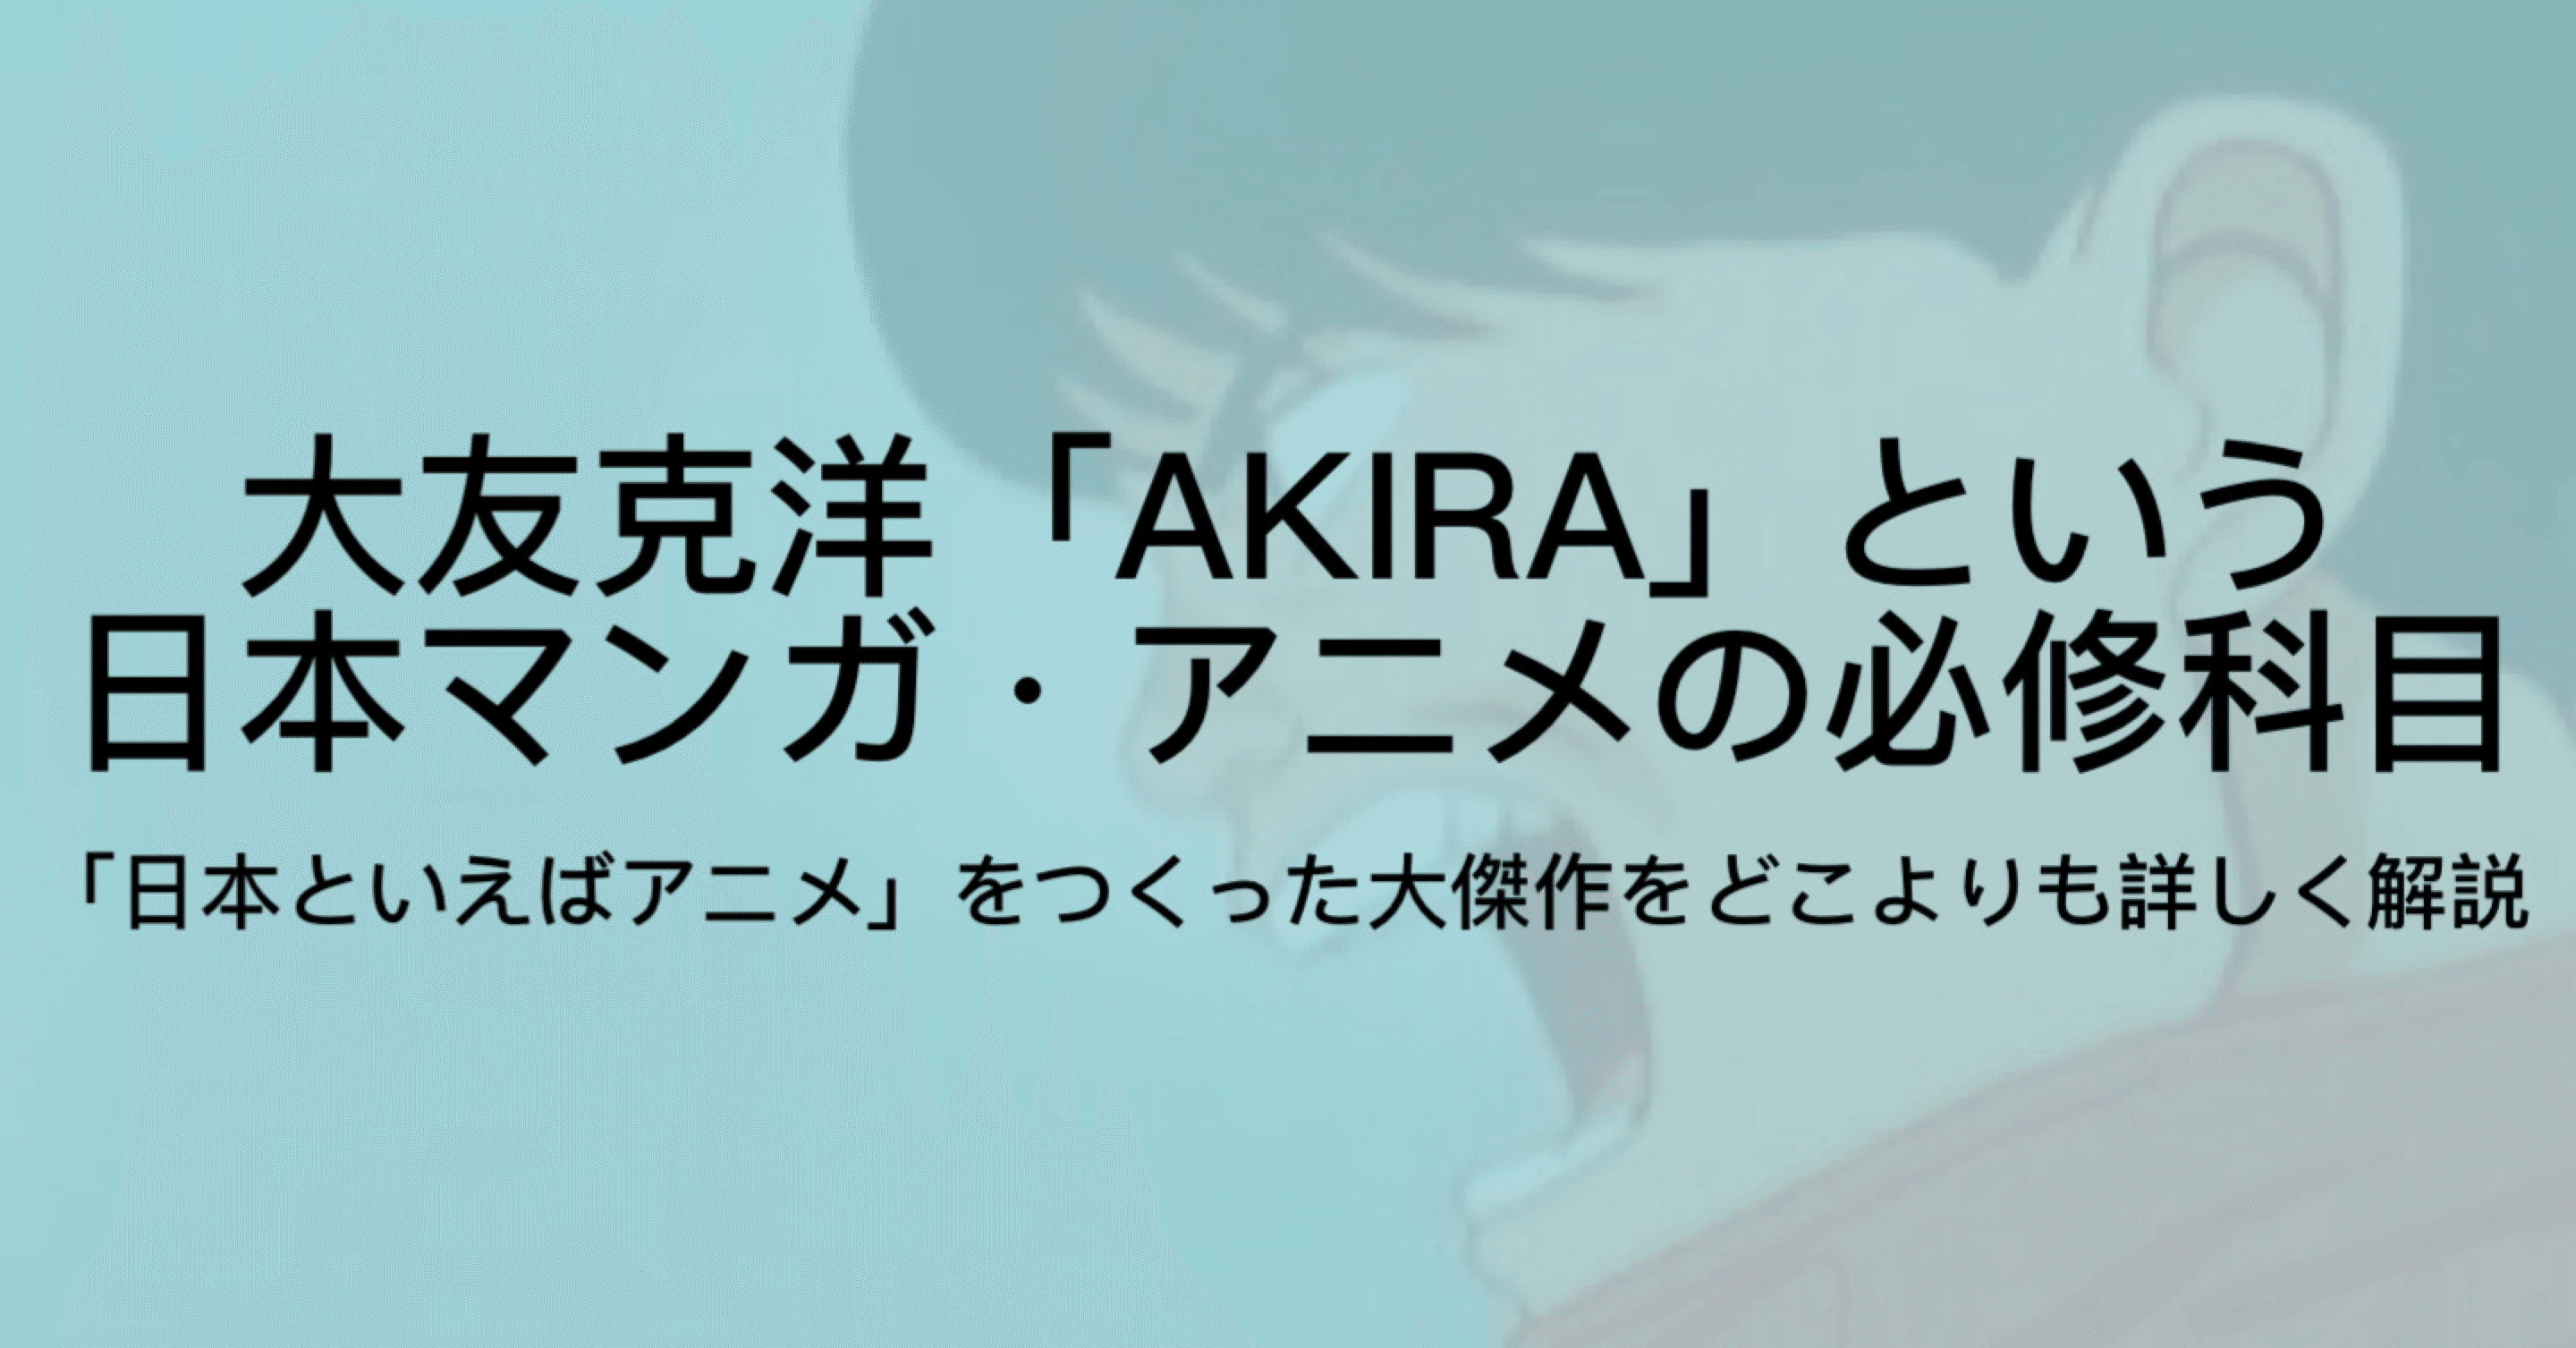 Akiraとは 漫画 アニメ映画の両方について 何がすごいのか を徹底解説 ジュウ ショ アート カルチャーライター Note